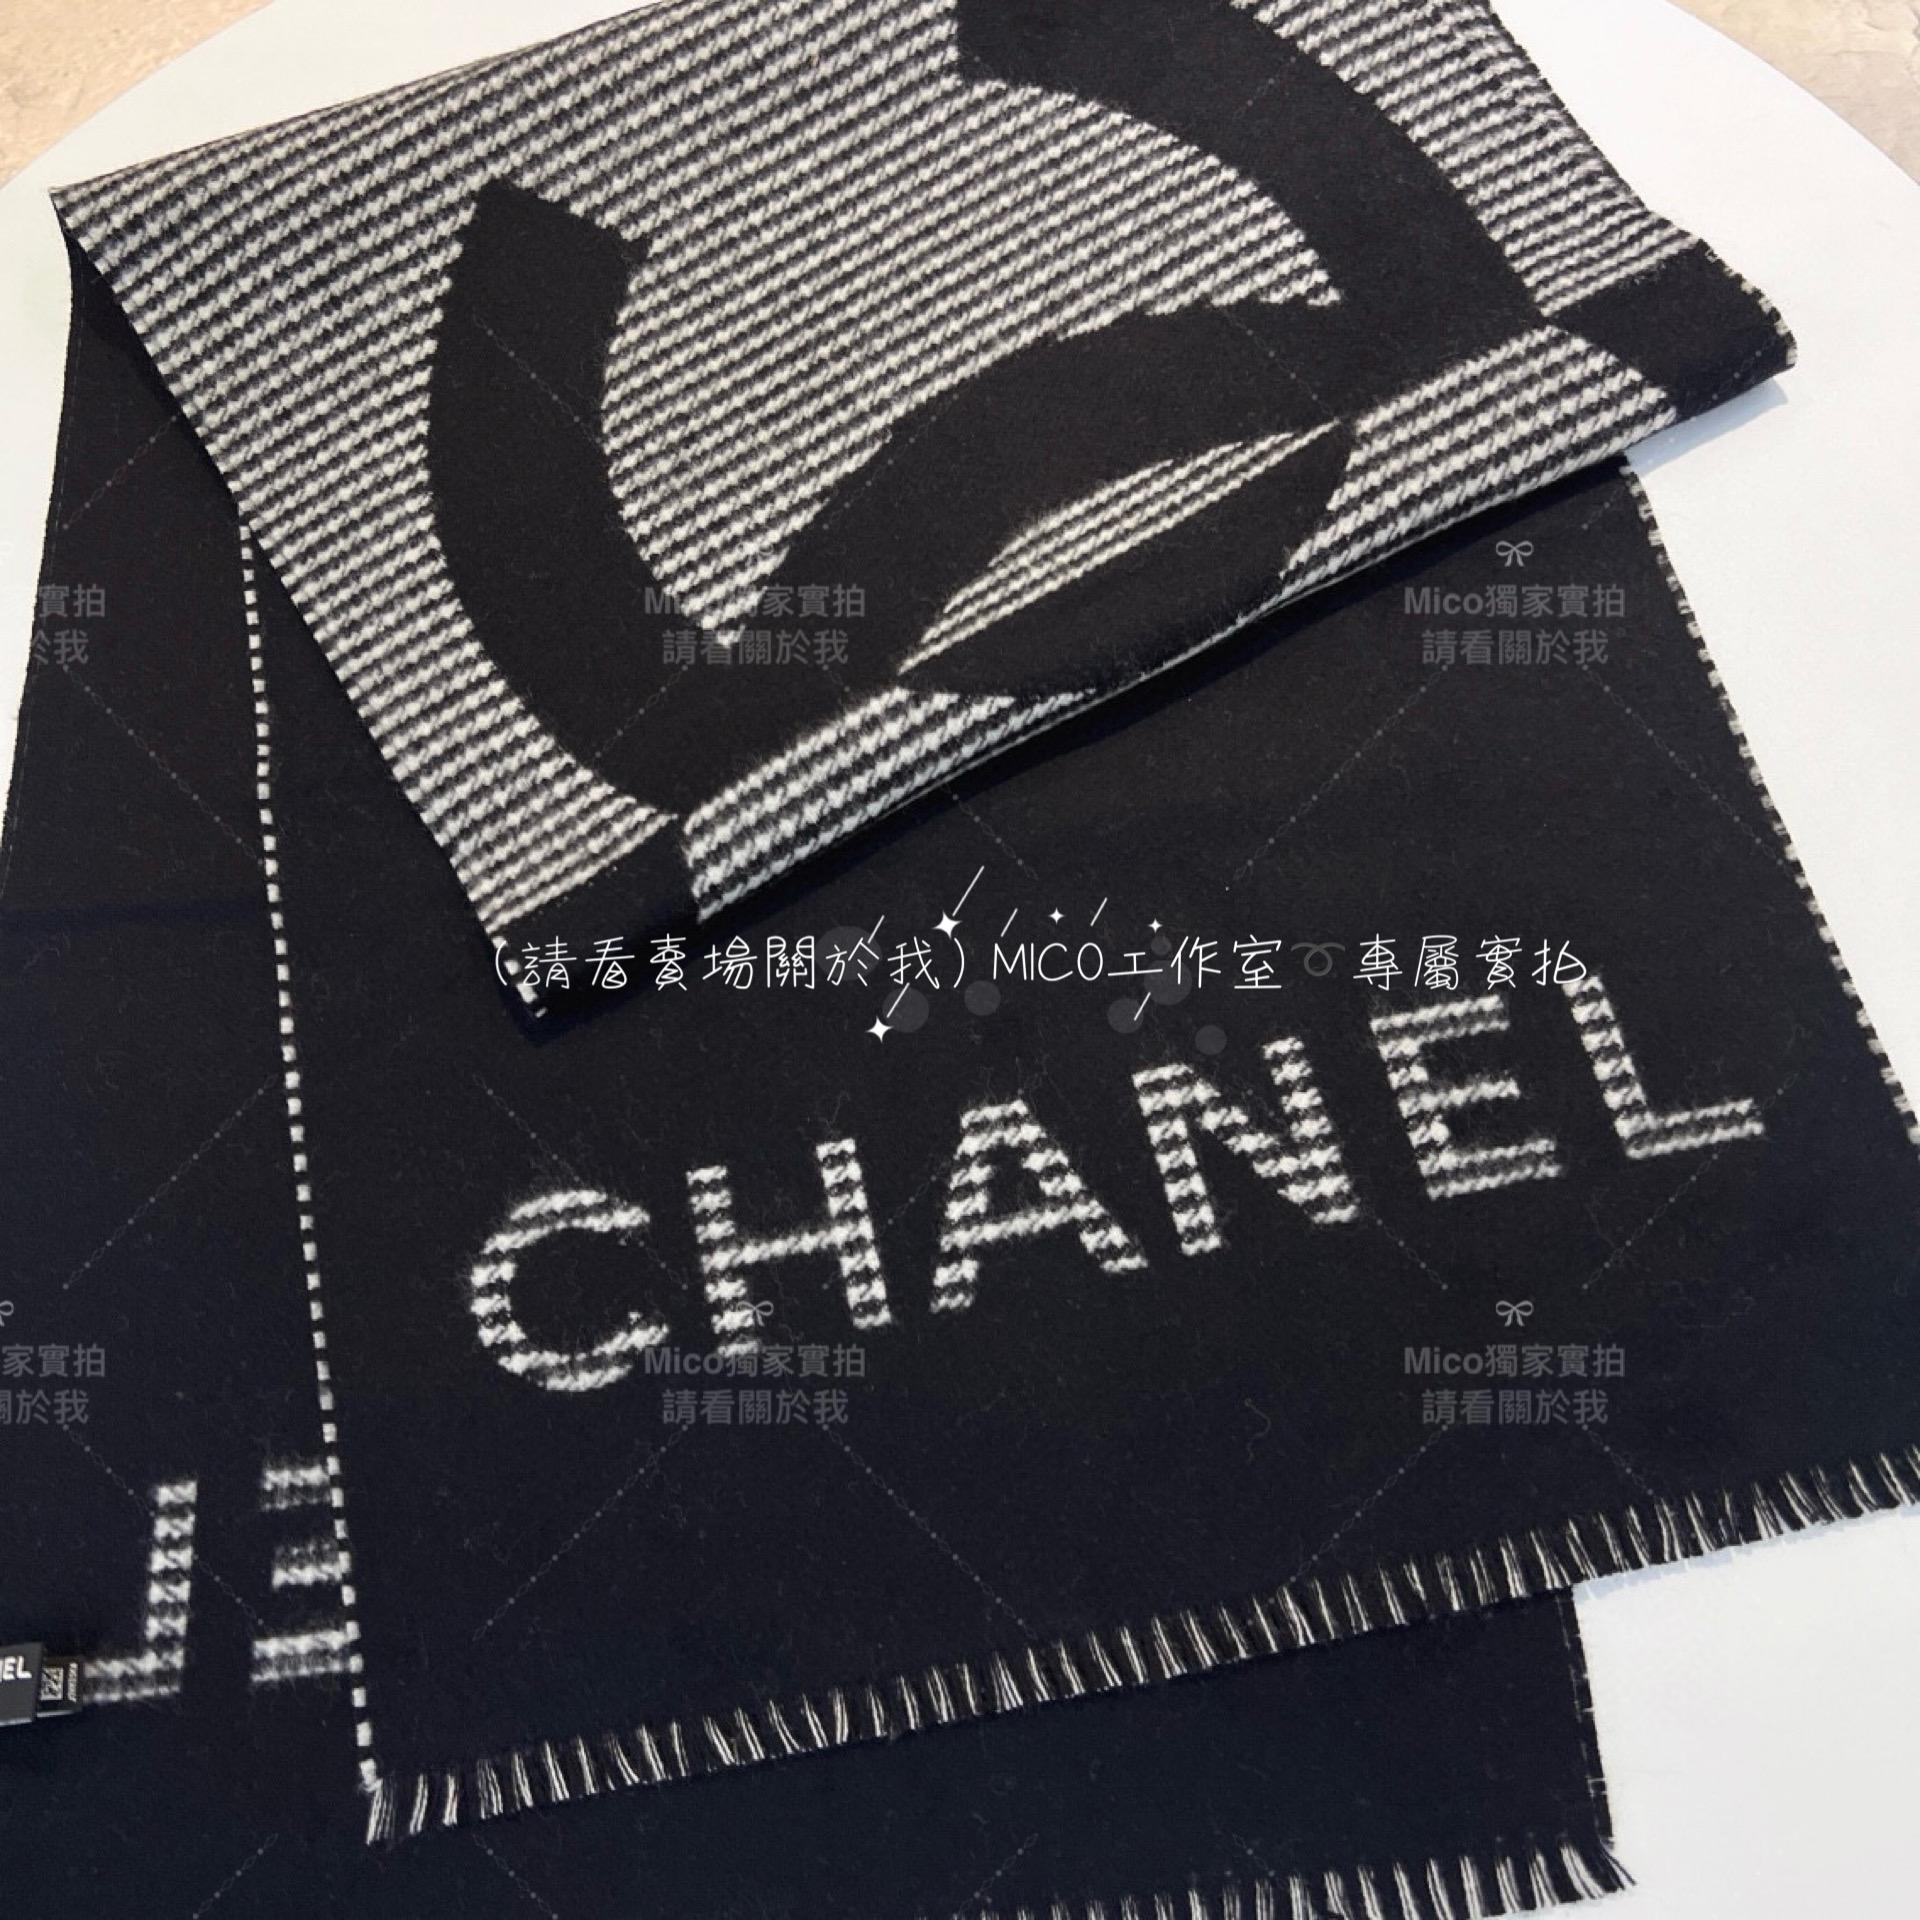 Chanel 高訂版 《 23B 千鳥格圍巾》 Size：185×42cm